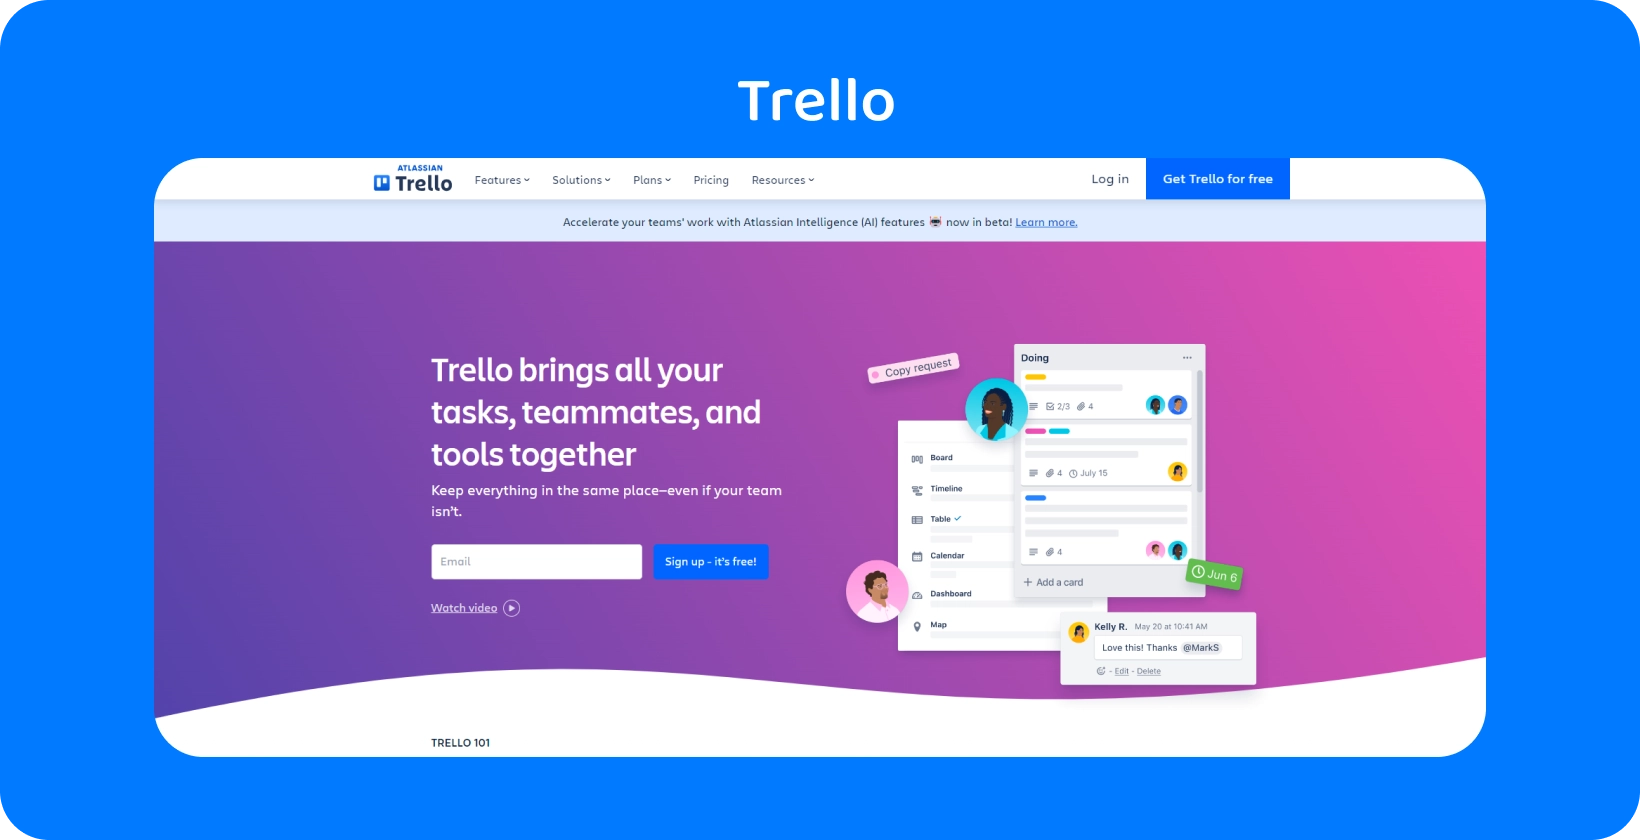 Интерфейс Trello, показывающий организацию задач, идеально подходит для юристов для управления файлами дела и совместной работы.